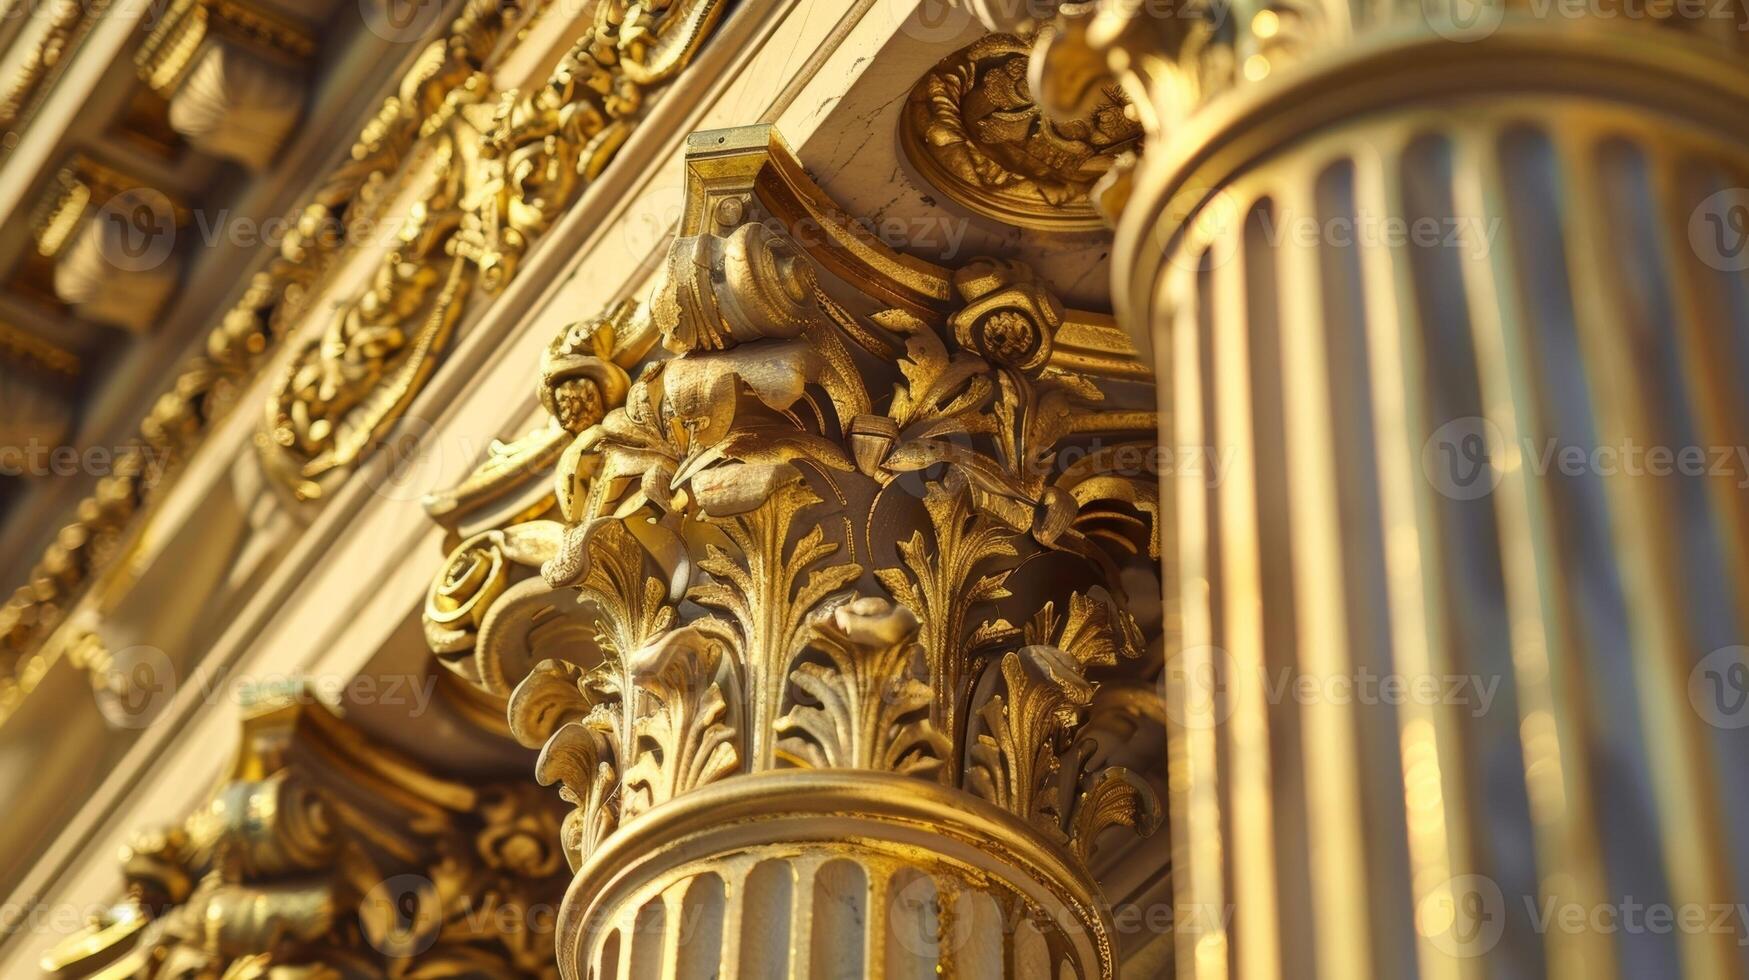 utilizando periodo apropiado tecnicas trabajadores son cuidadosamente aplicando nuevo capas de oro hoja a florido columnas de un histórico griego renacimiento edificio foto